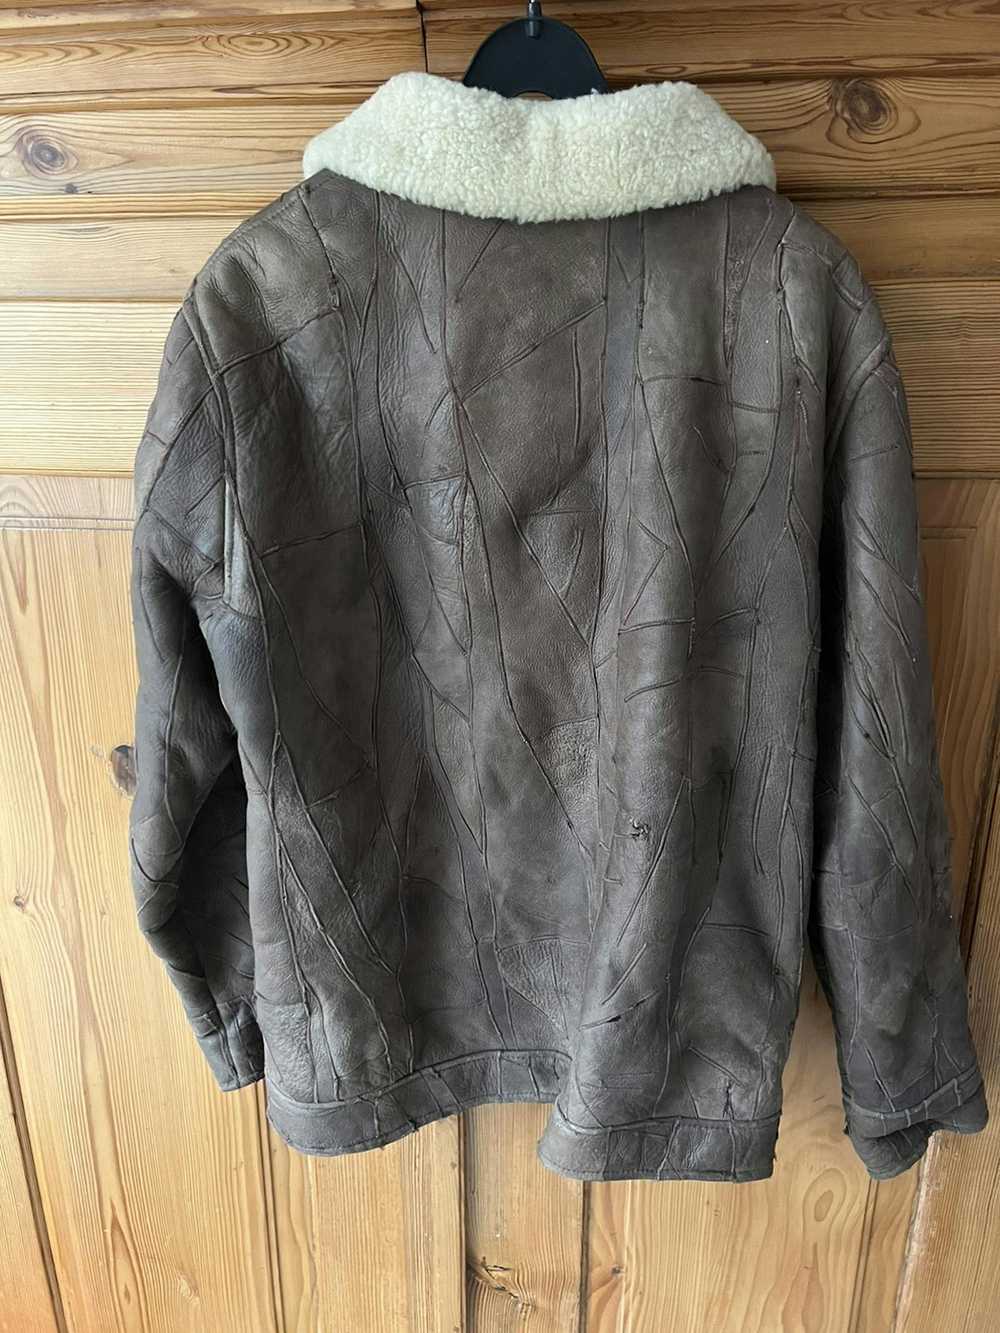 Handmade Japan vintage Brown Leather Jacket winte… - image 3